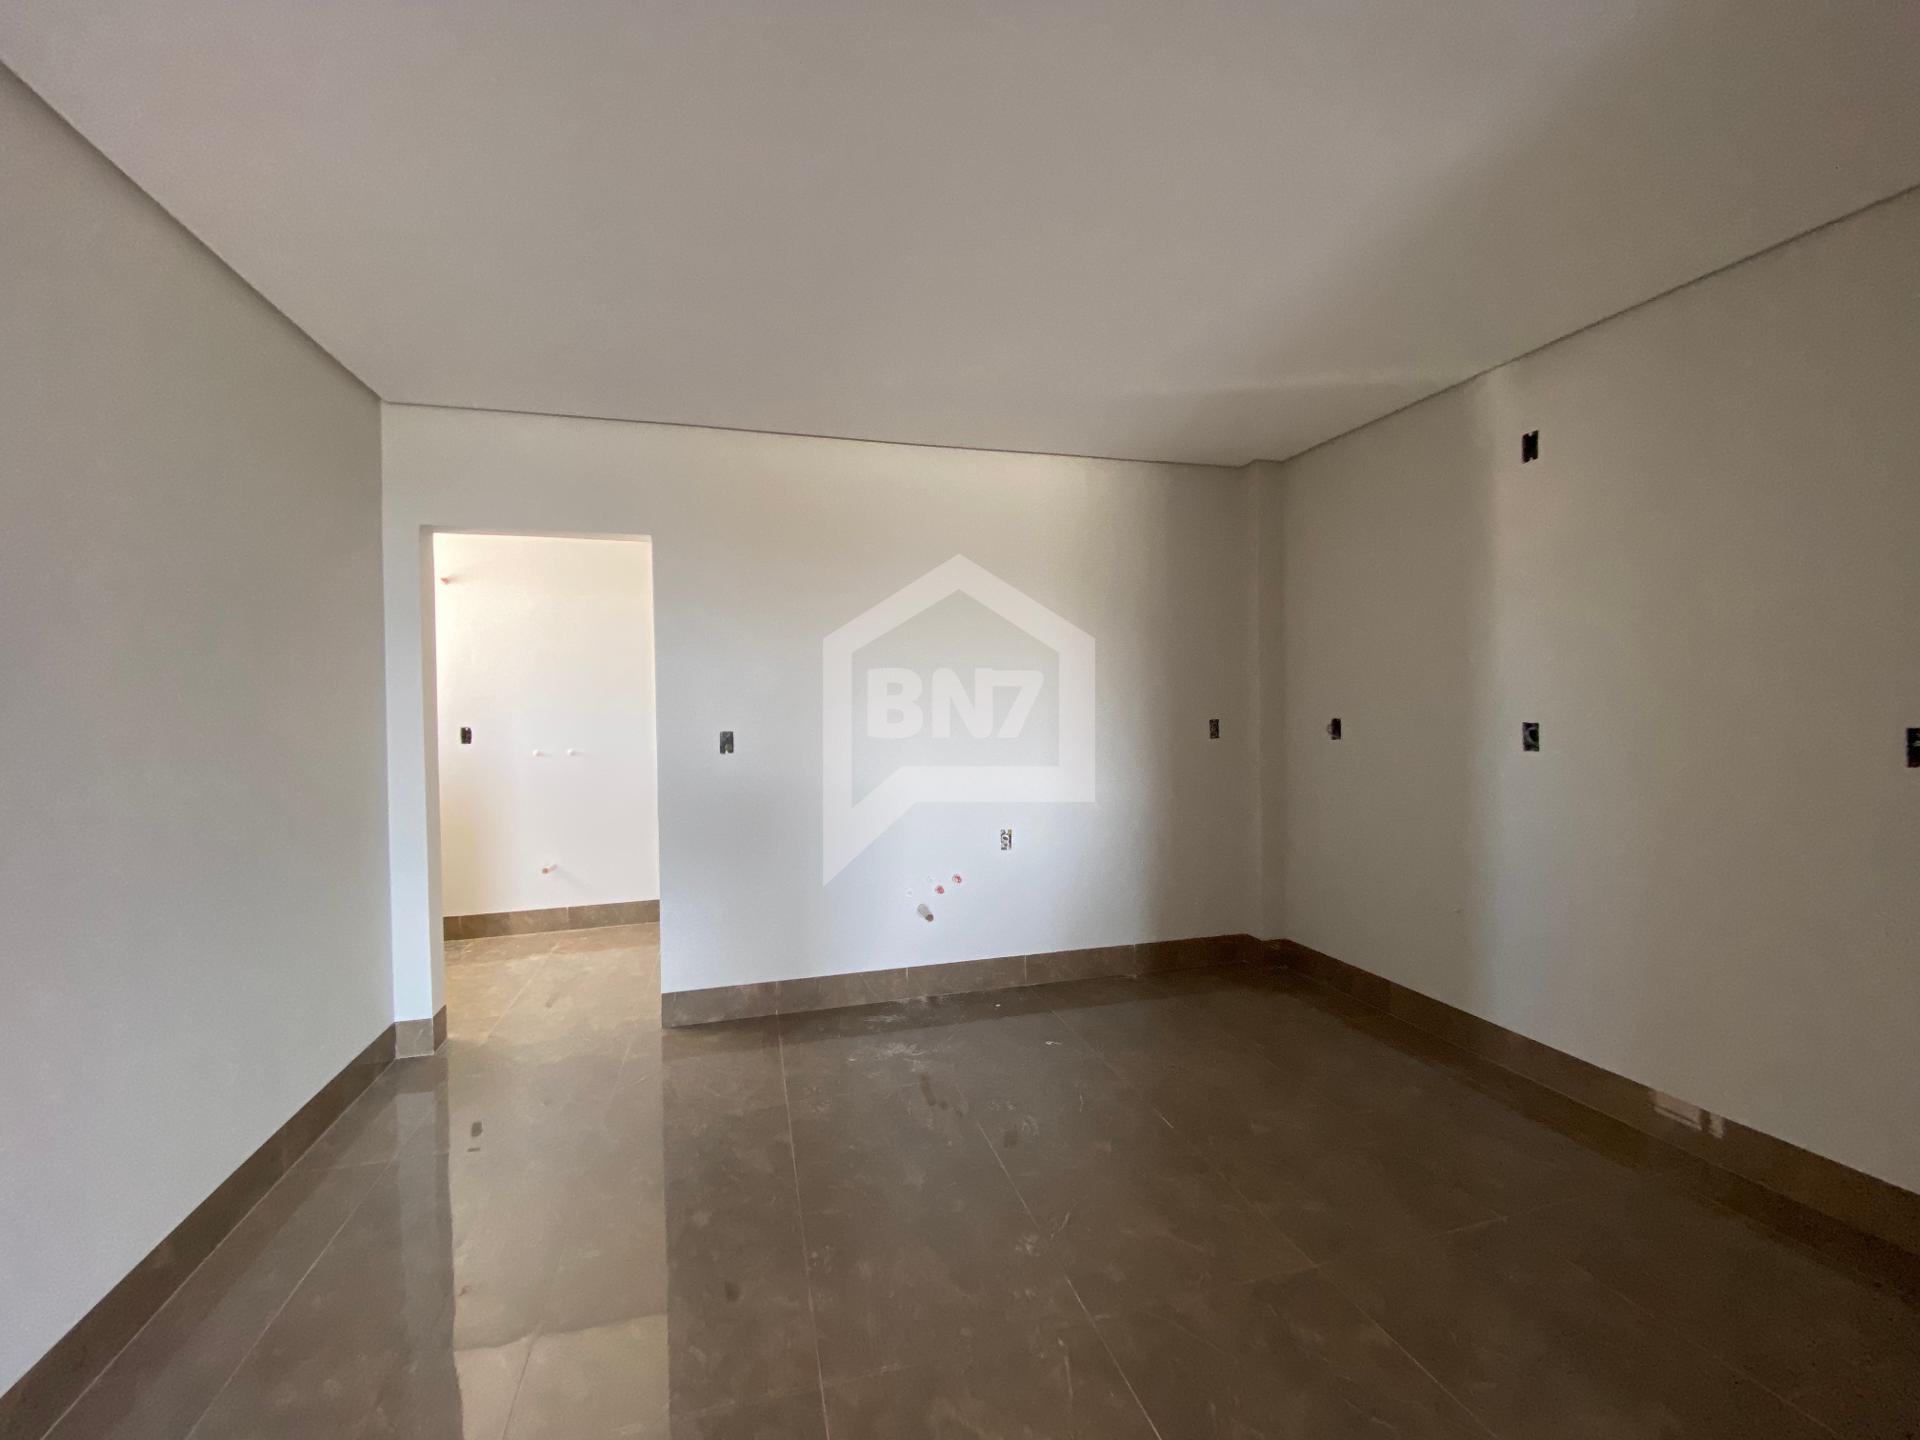 BN7 Negócios Imobiliária em Francisco Beltrão PR